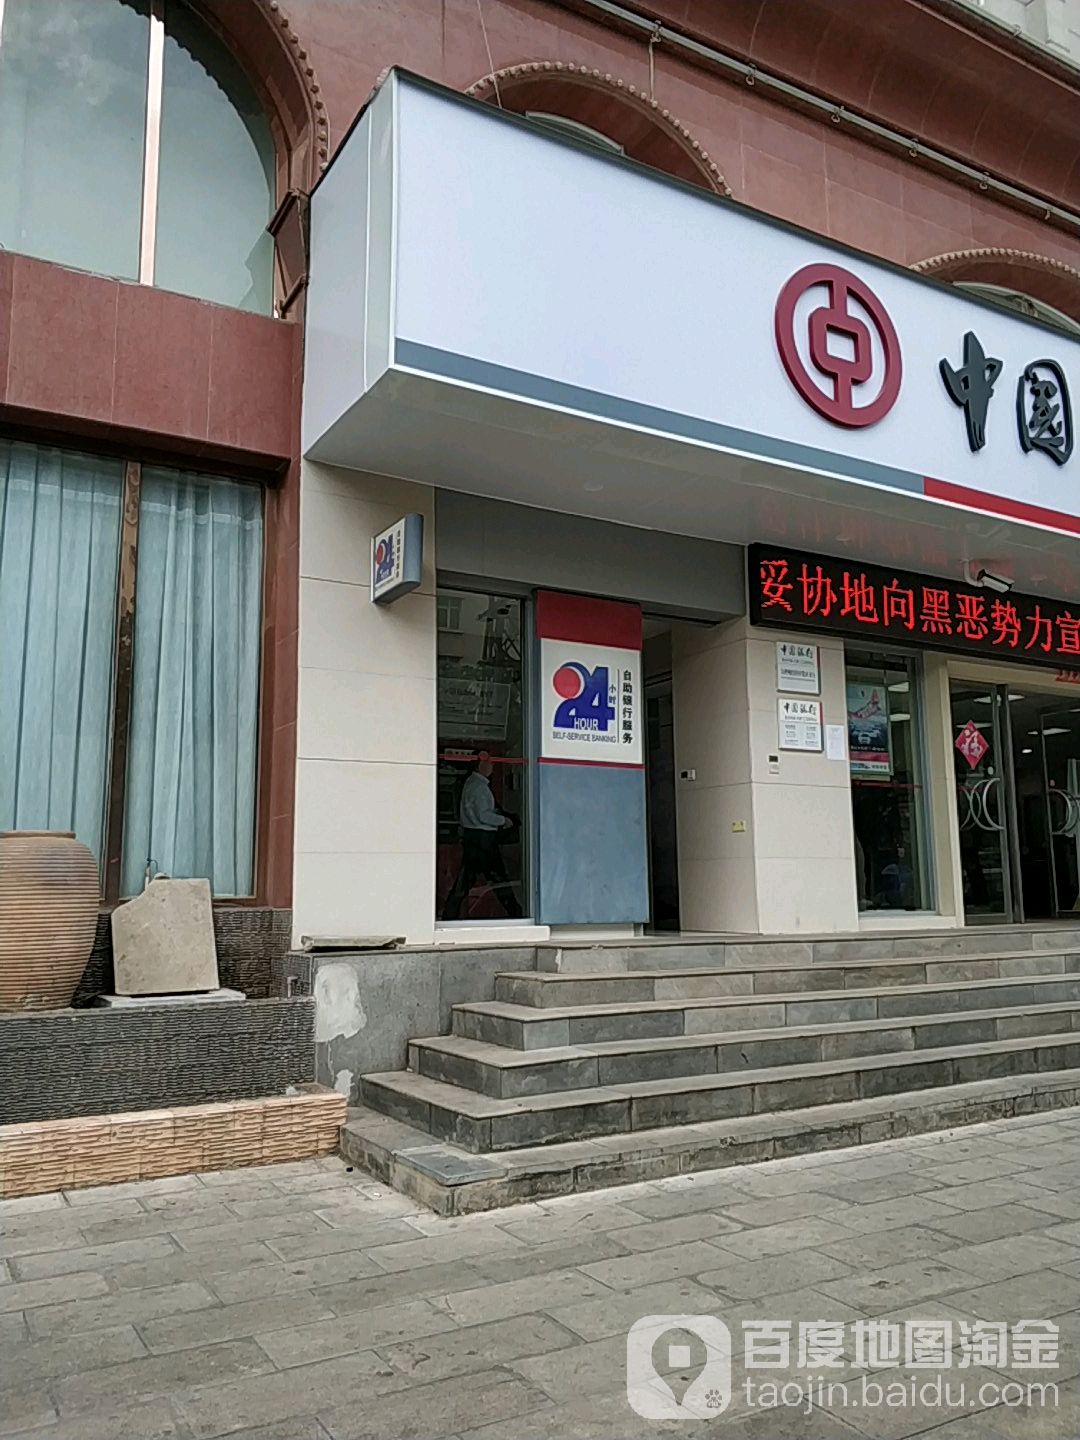 中国银行24小时自助银行(大理白族自治州经济开发区支行)